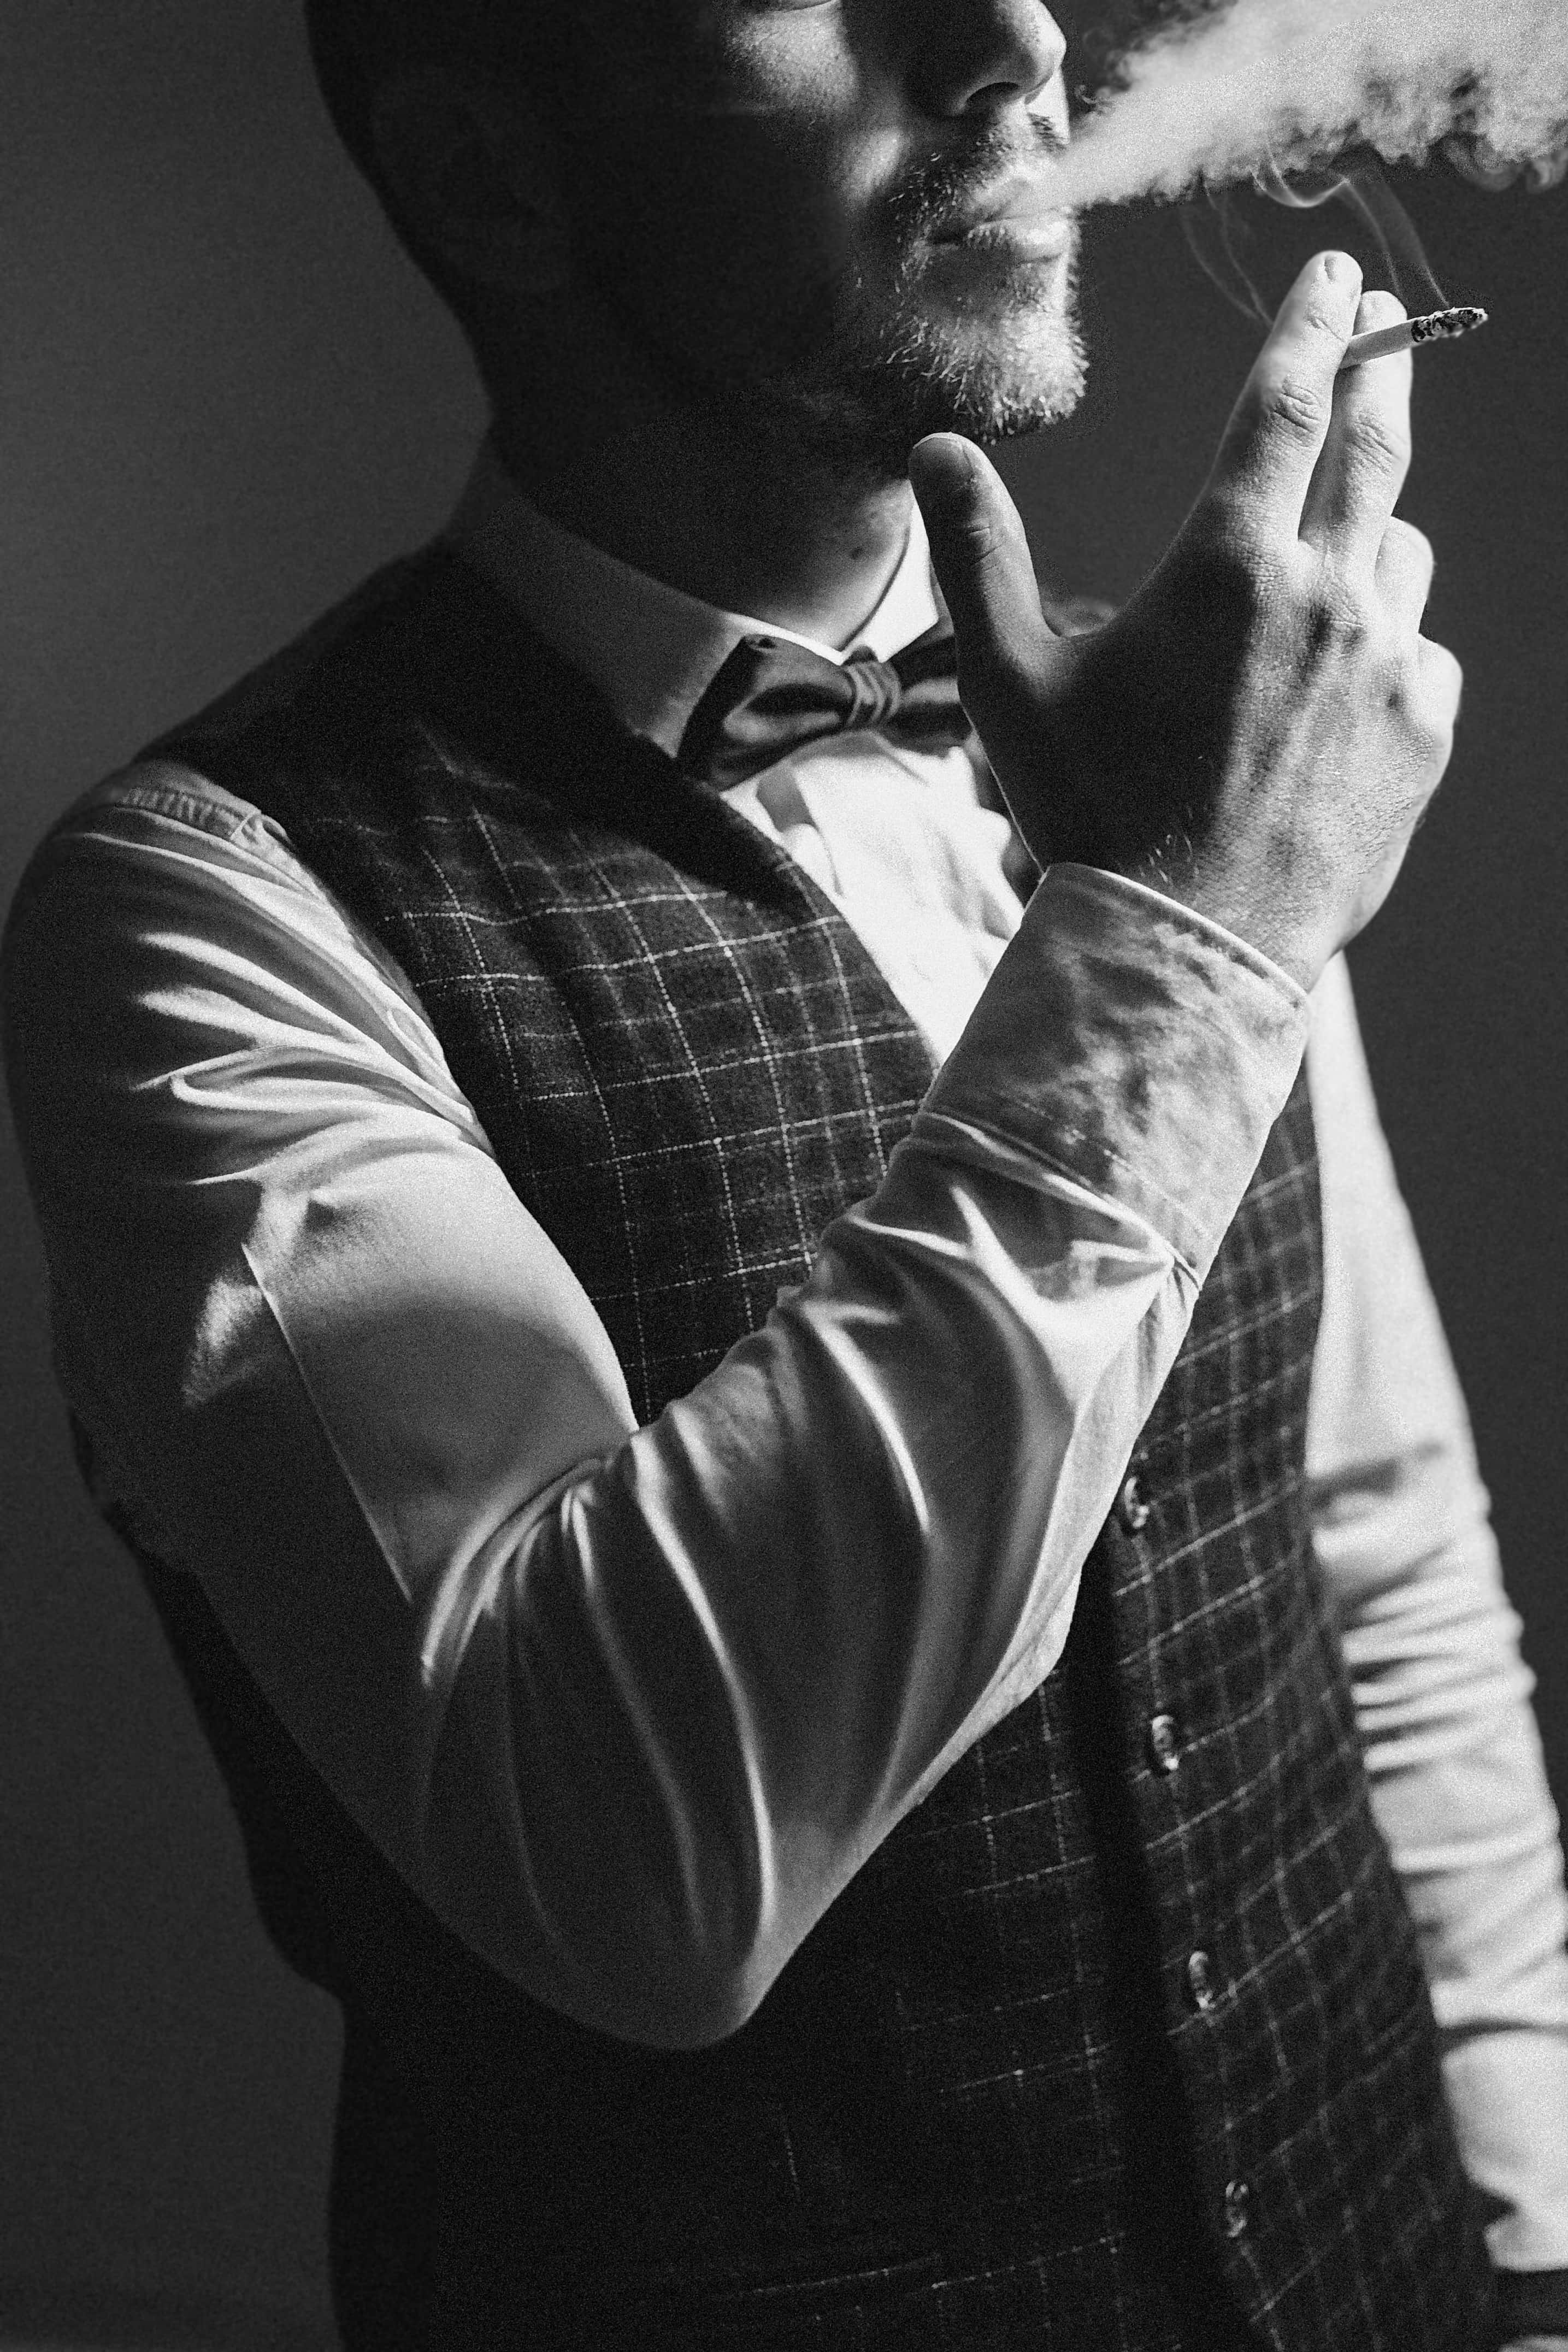 时尚行家男性式样抽烟 库存图片. 图片 包括有 抽烟, 英俊, 有吸引力的, 时髦, 现代, 年轻, 烟雾 - 46805507